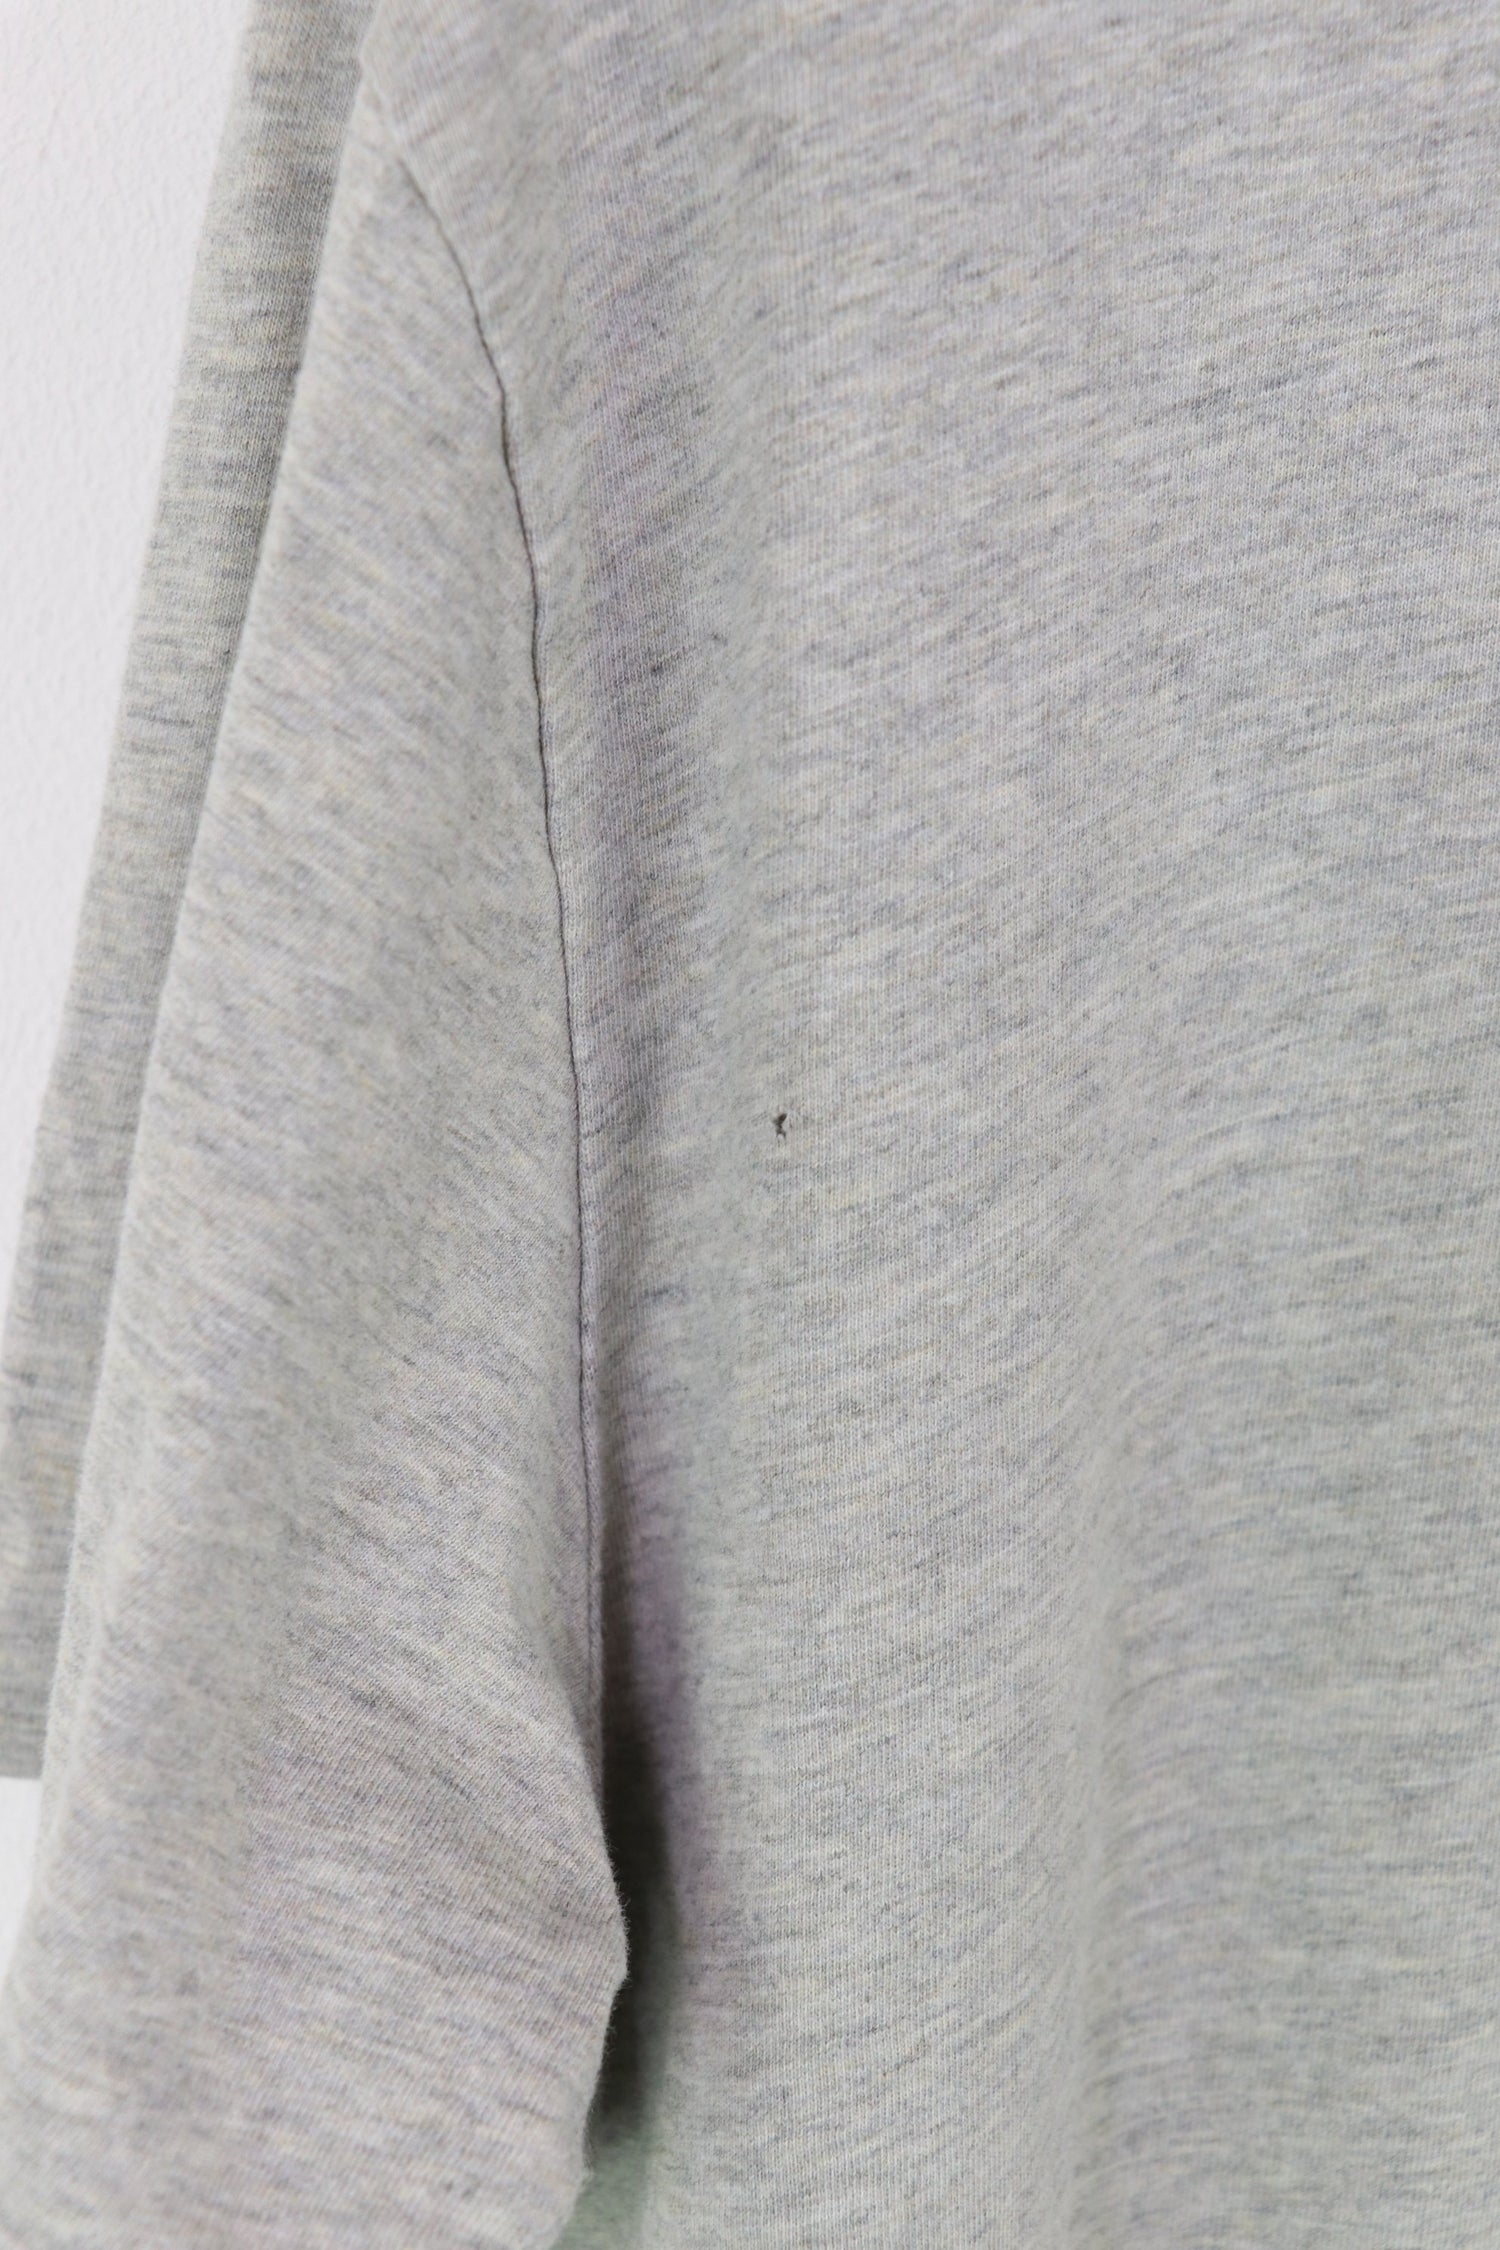 Ralph Lauren T-shirt Grey Small